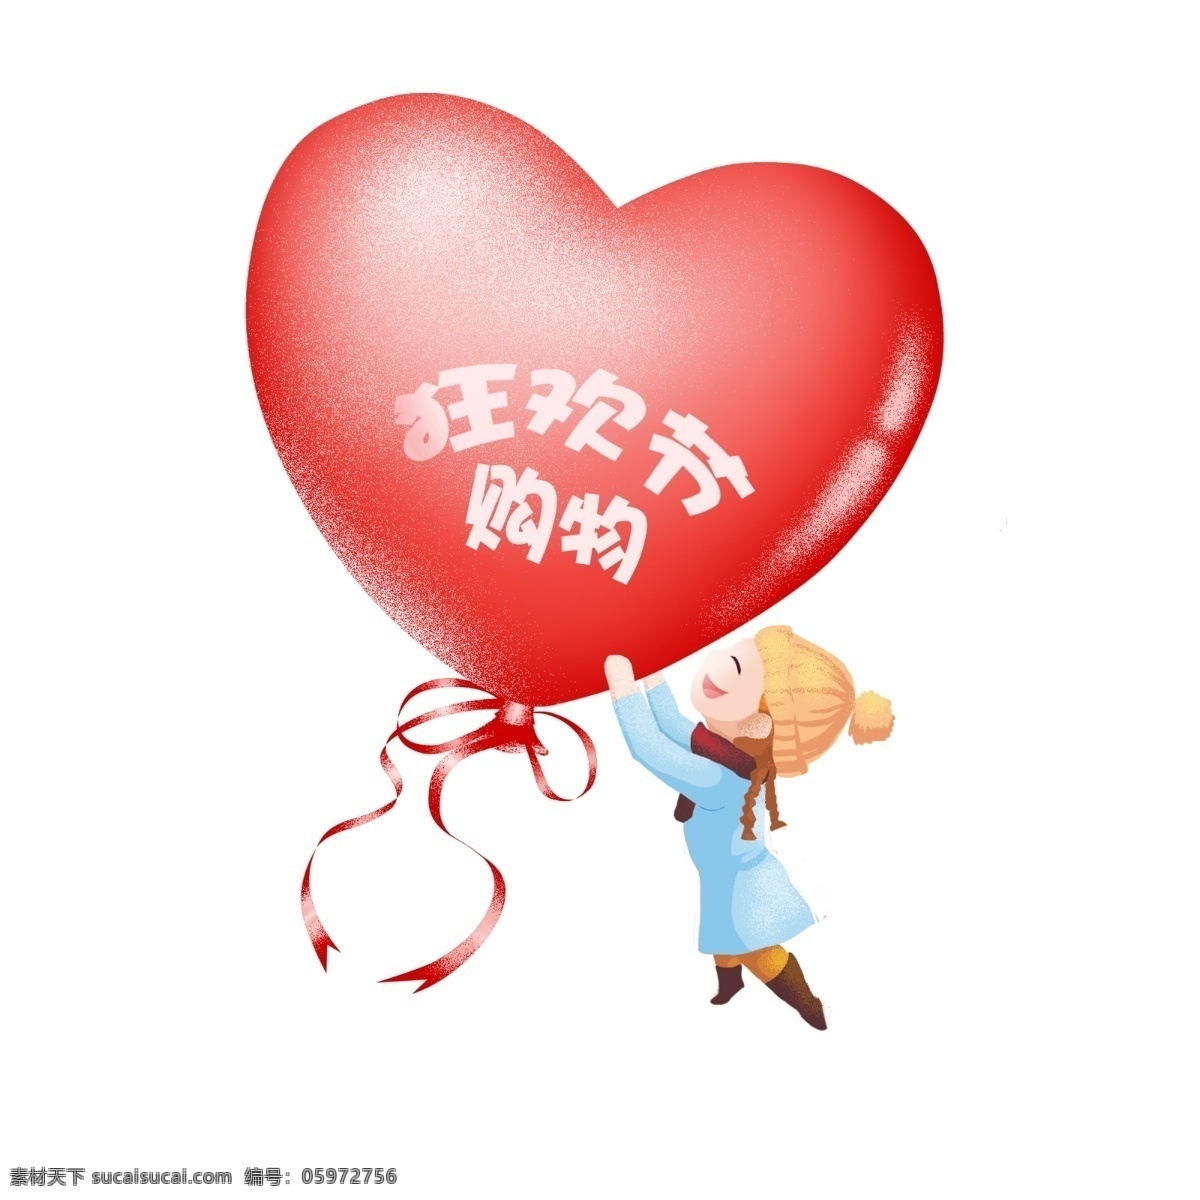 商用 手绘 插画 国庆 红色 气球 国庆节 秋装 可商用 小胖妞